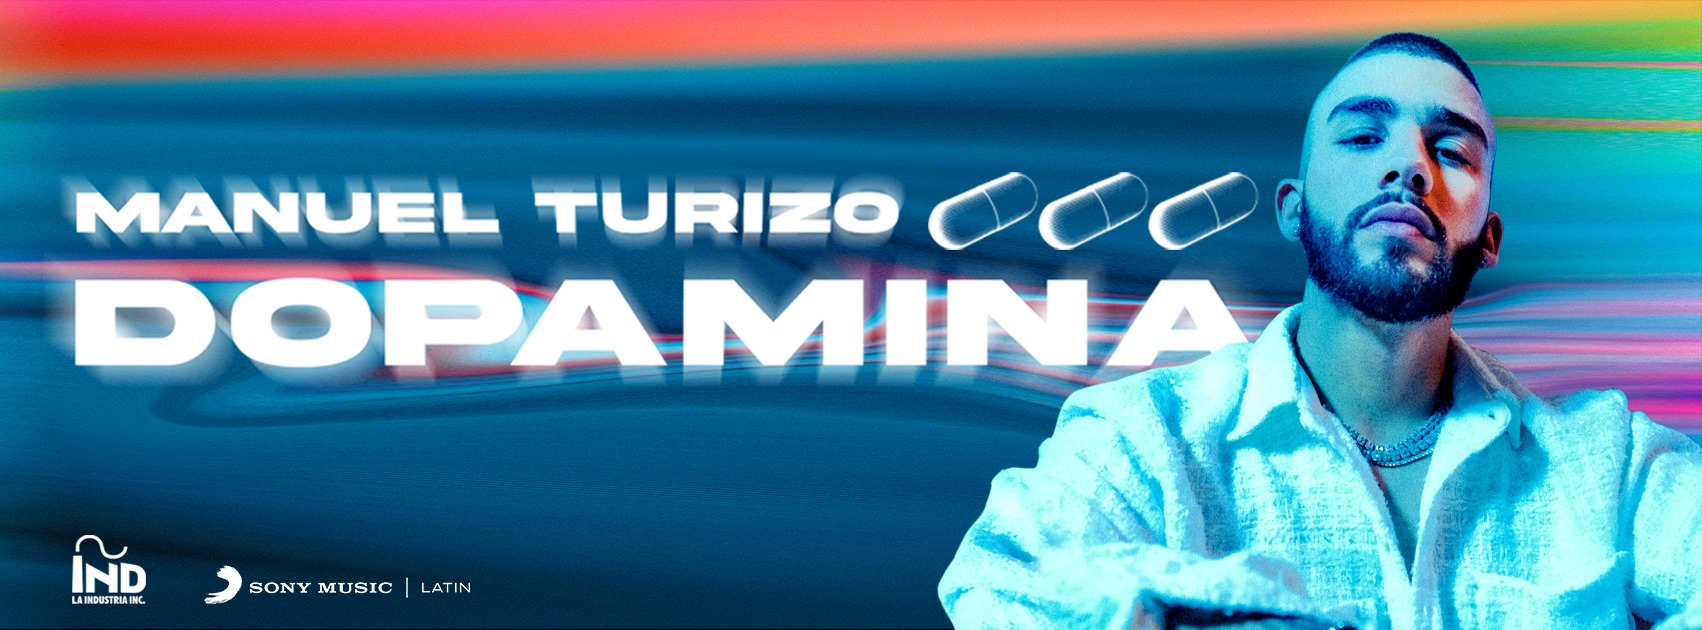 Manuel Turizo platica sobre “Dopamina”, su nuevo sencillo